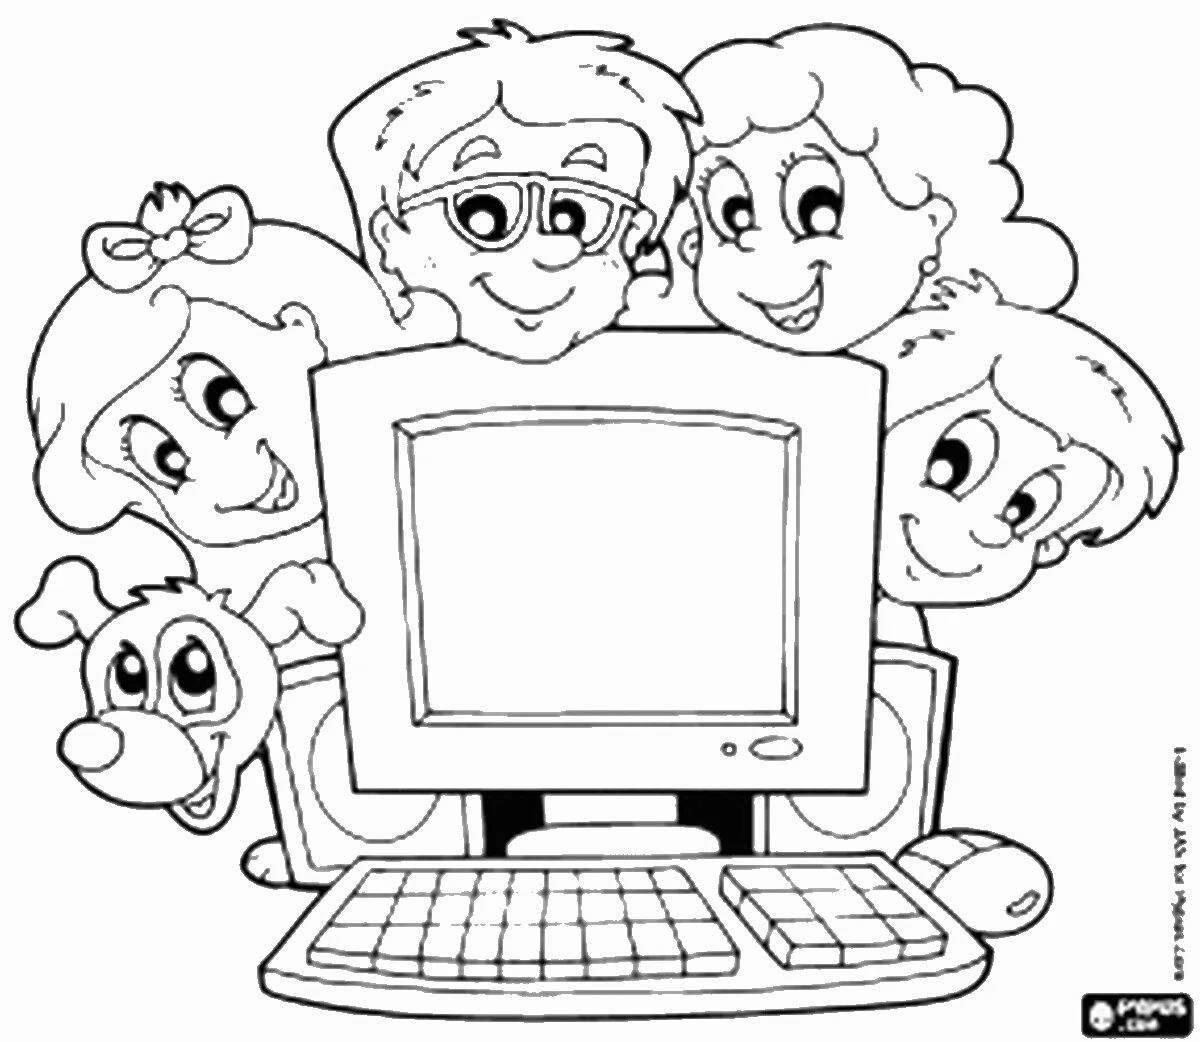 Безопасный интернет для детей начальной школы #19